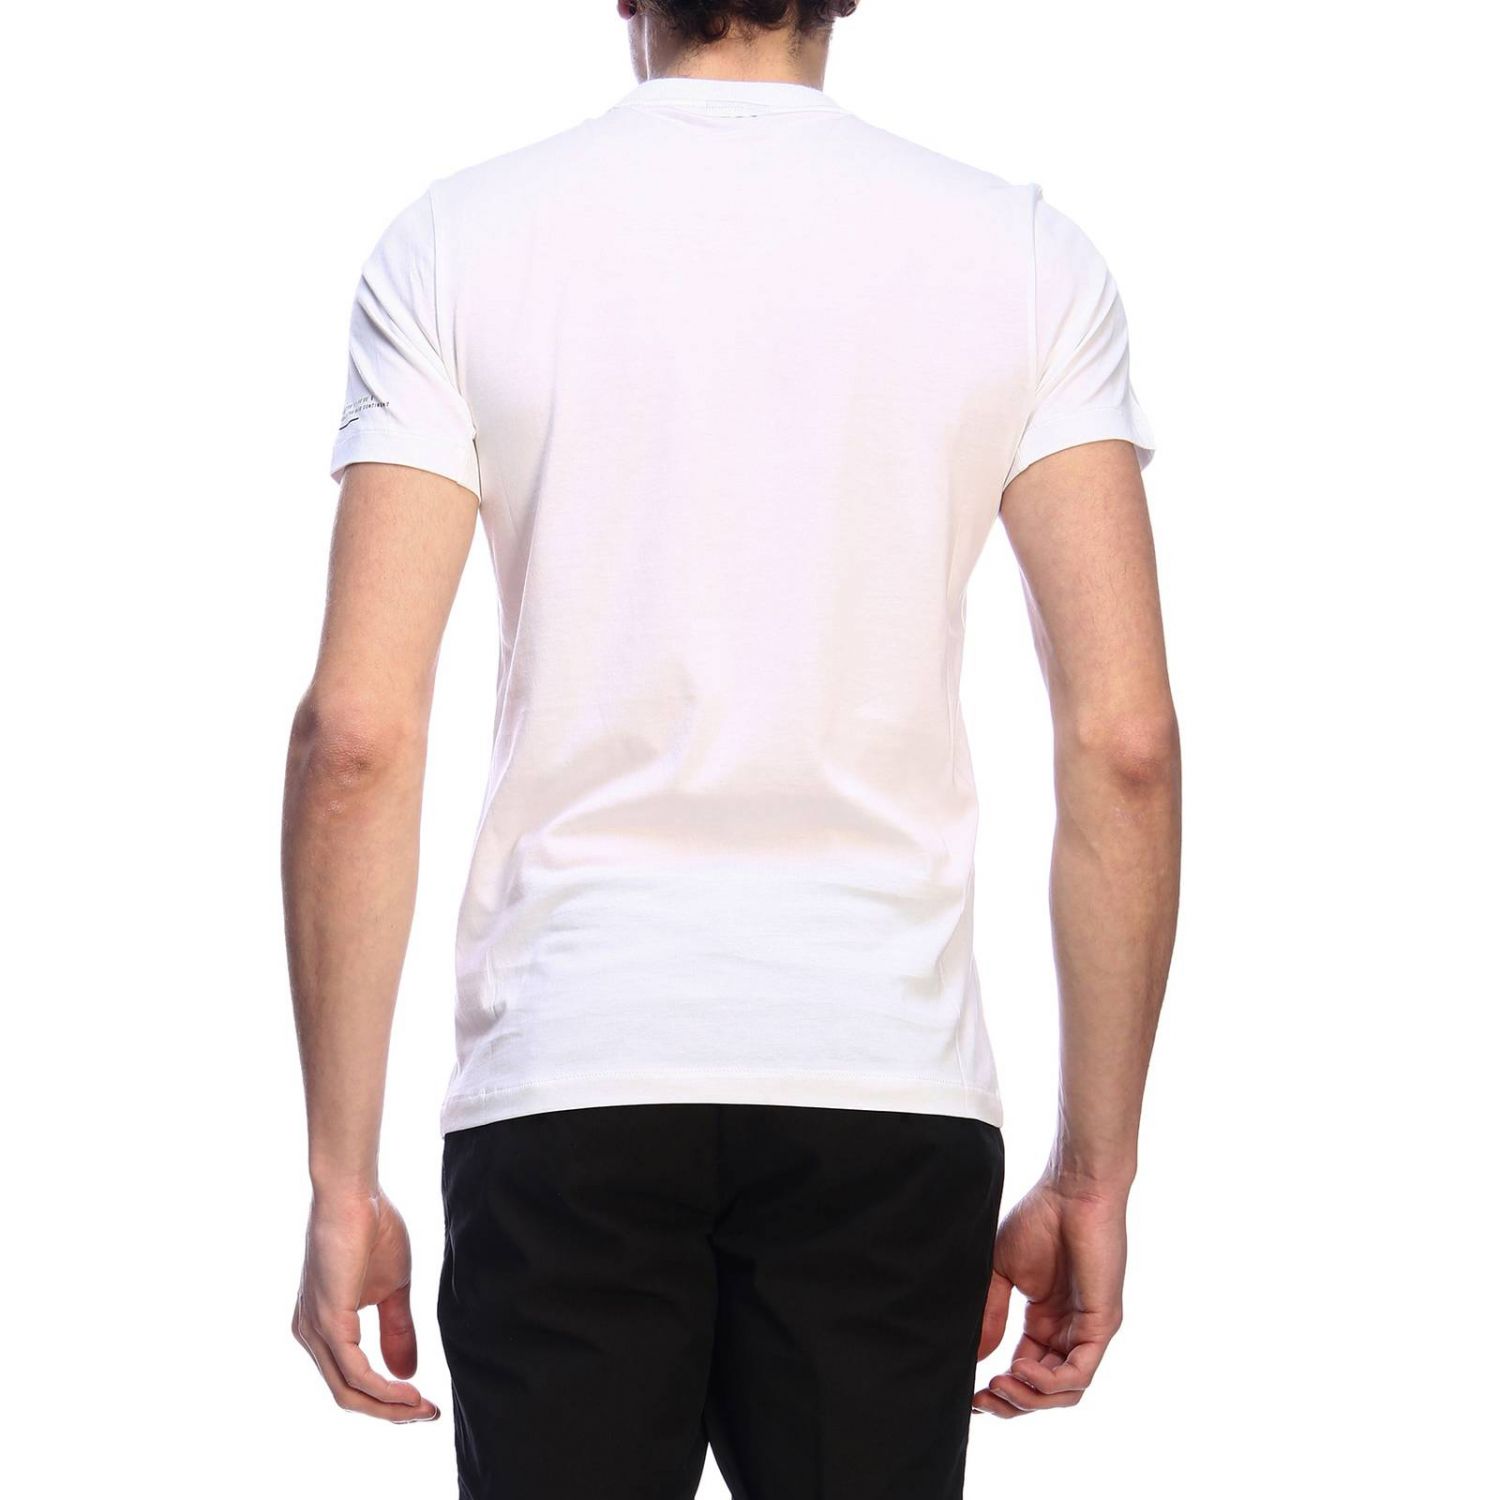 Napapijri Outlet: T-shirt men | T-Shirt Napapijri Men White | T-Shirt ...